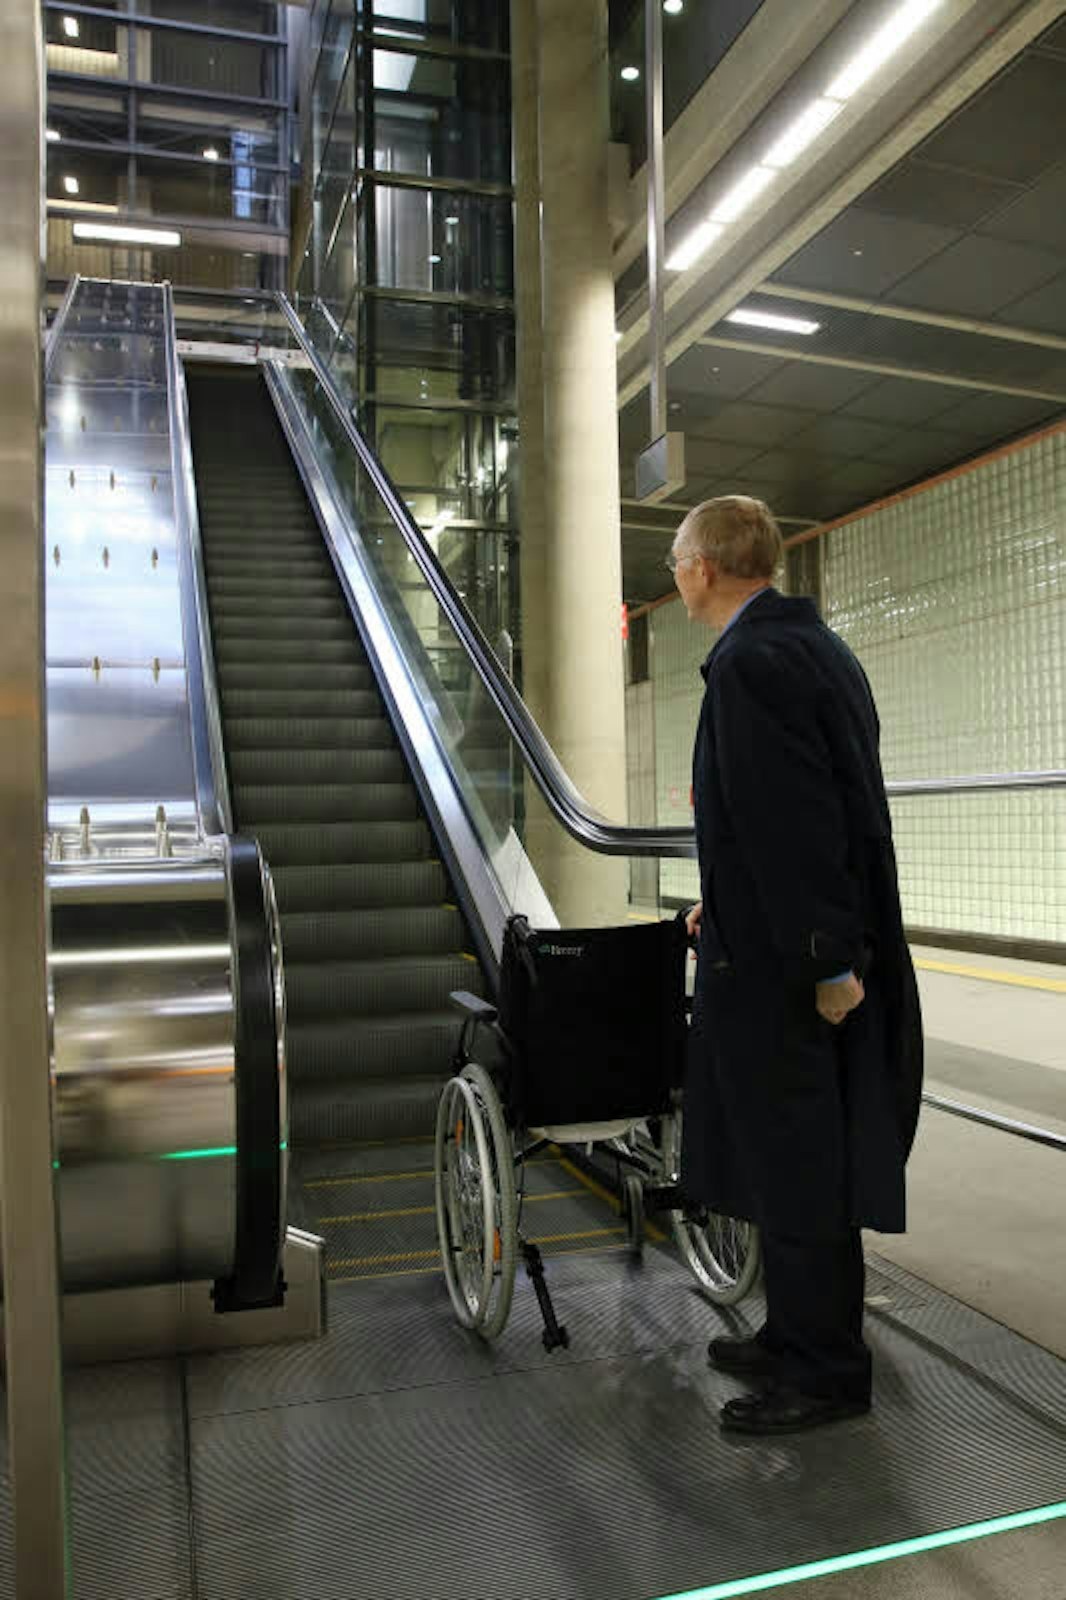 An der Station Heumarkt funktioniert keine der Rolltreppen – ein großes Hindernis für Fox.